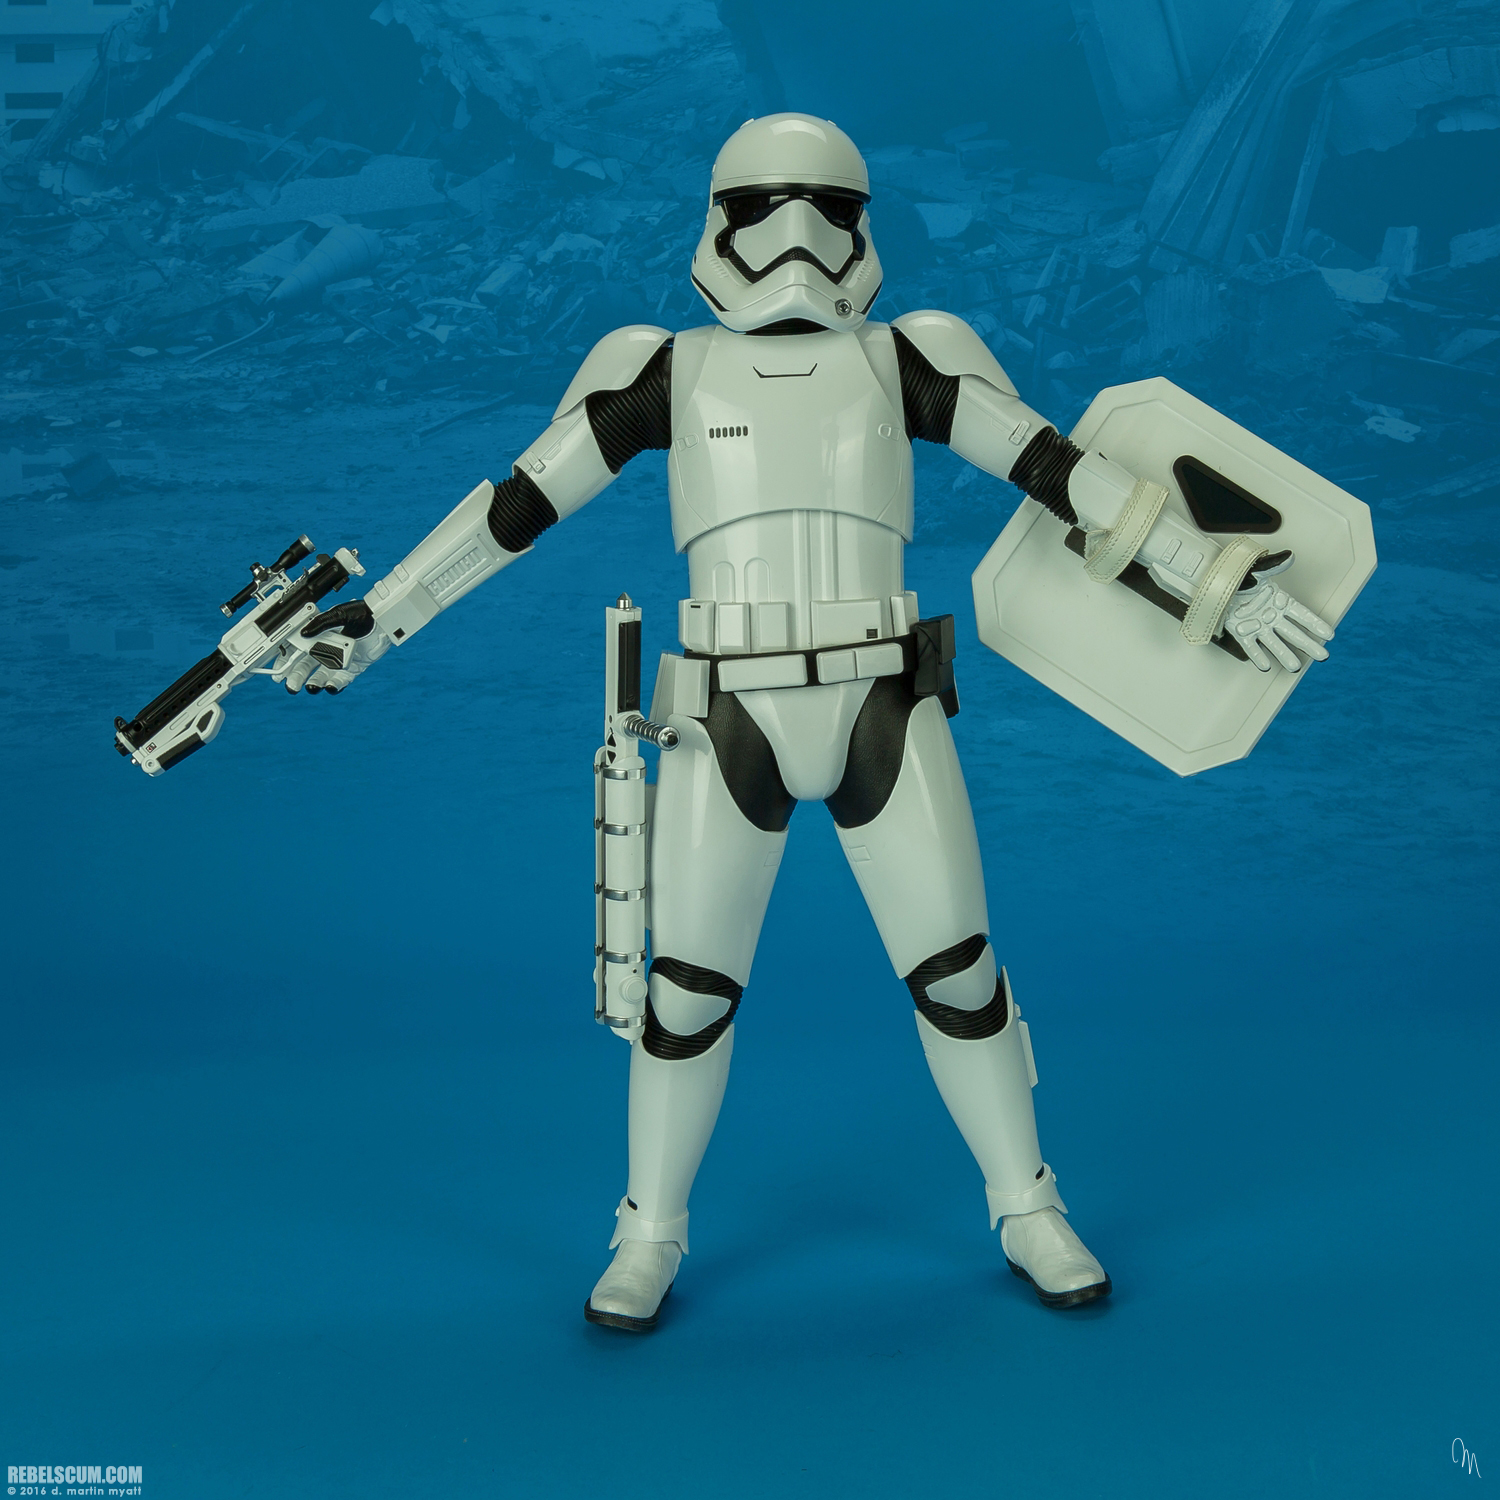 MMS346-Finn-First-Order-Riot-control-Stormtrooper-Hot-Toys-038.jpg